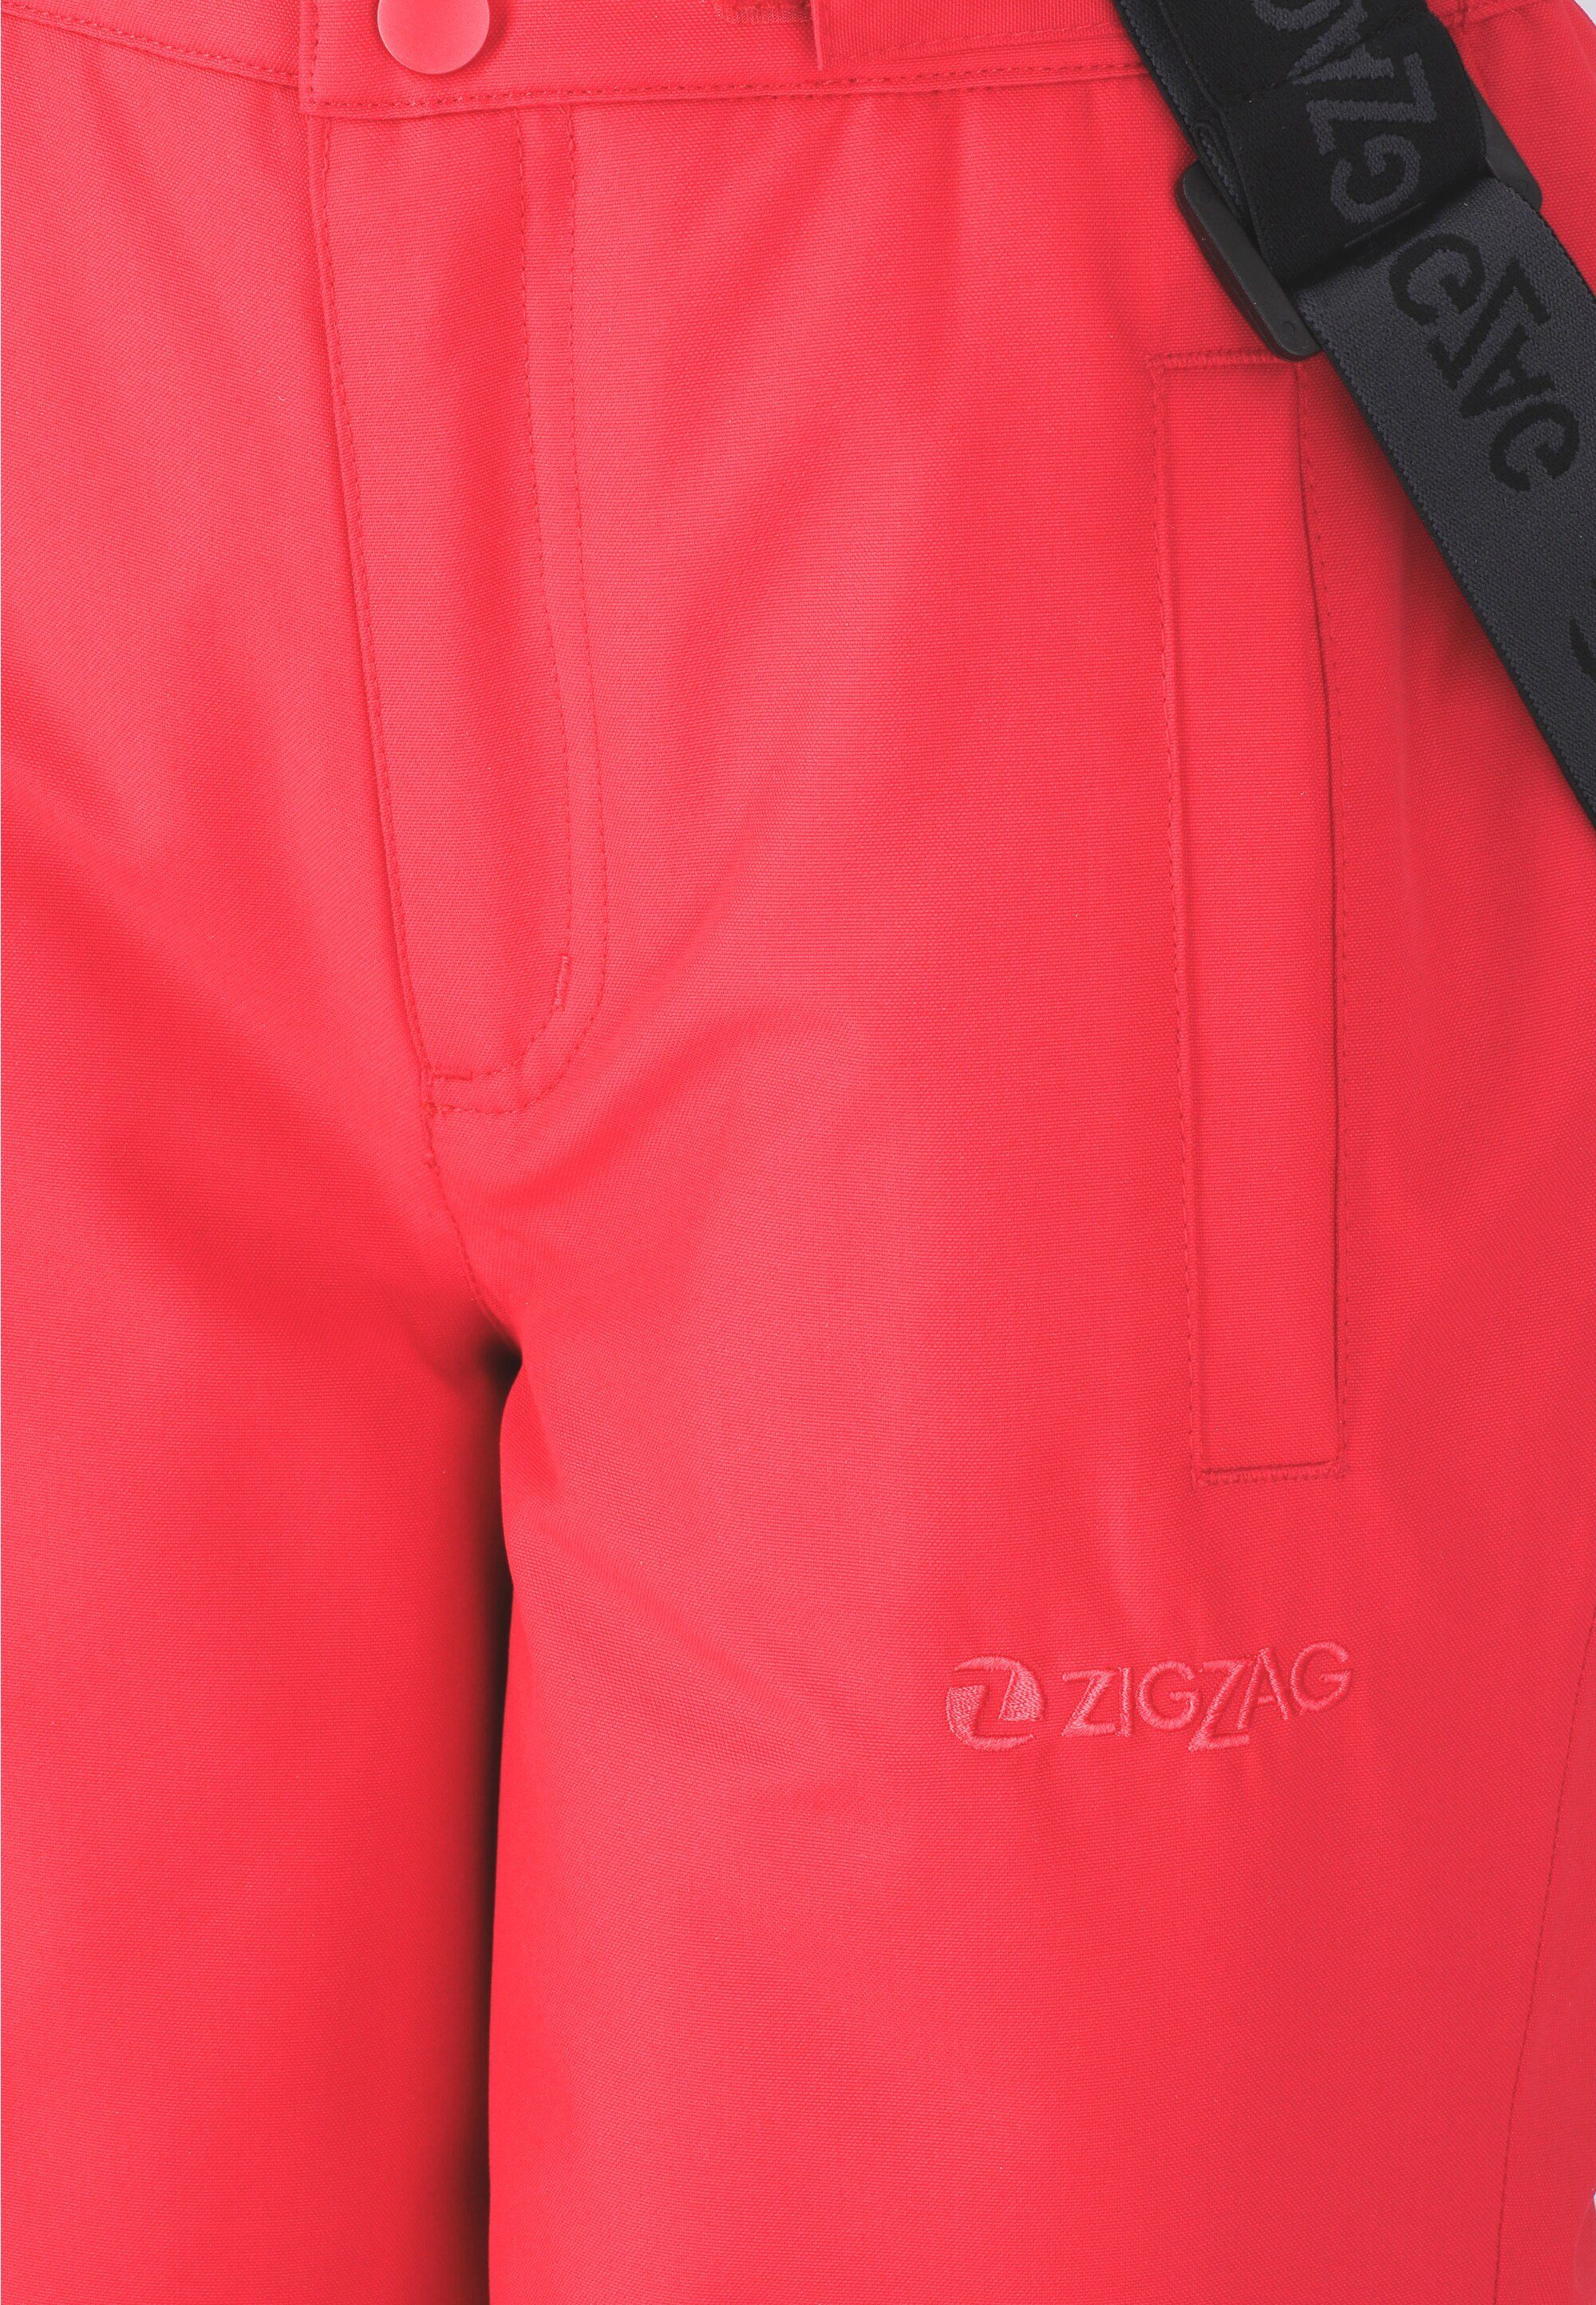 ZIGZAG Skihose Soho mit abnehmbaren Hosenträgern pink-schwarz